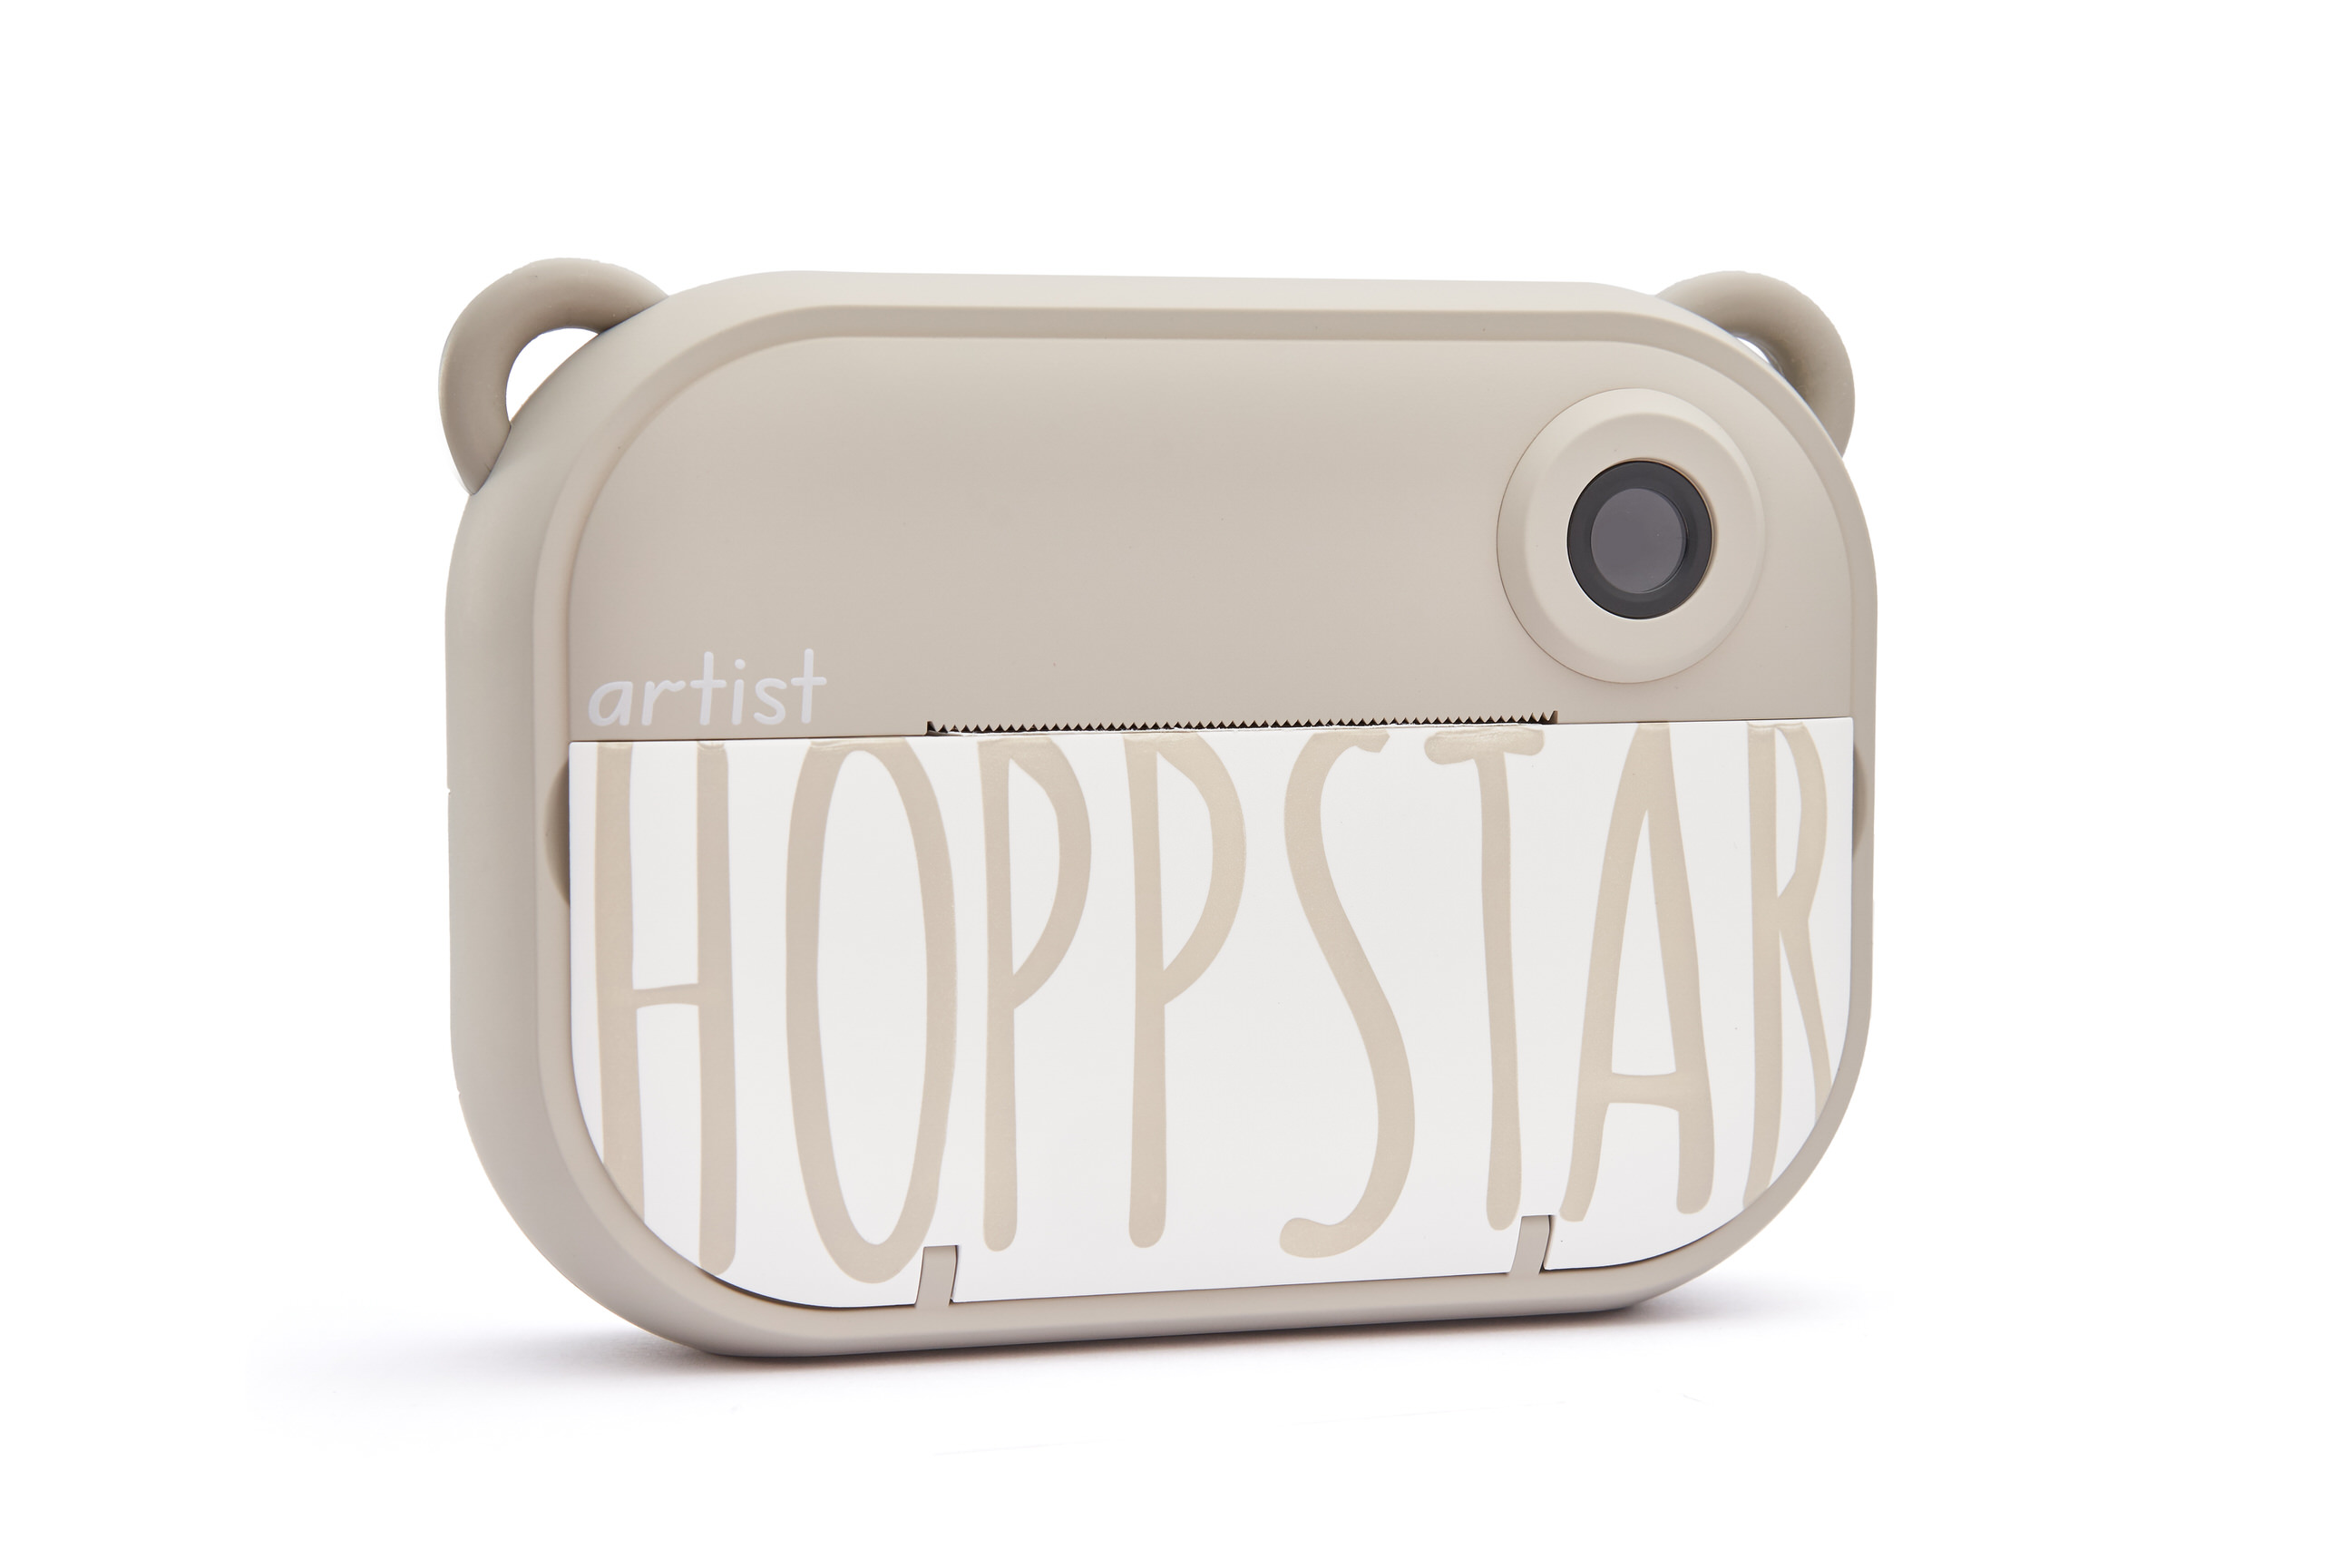 Hoppstar Artist Sofortbildkamera in der Farbe Oat (khaki), Frontalansicht leich schräg